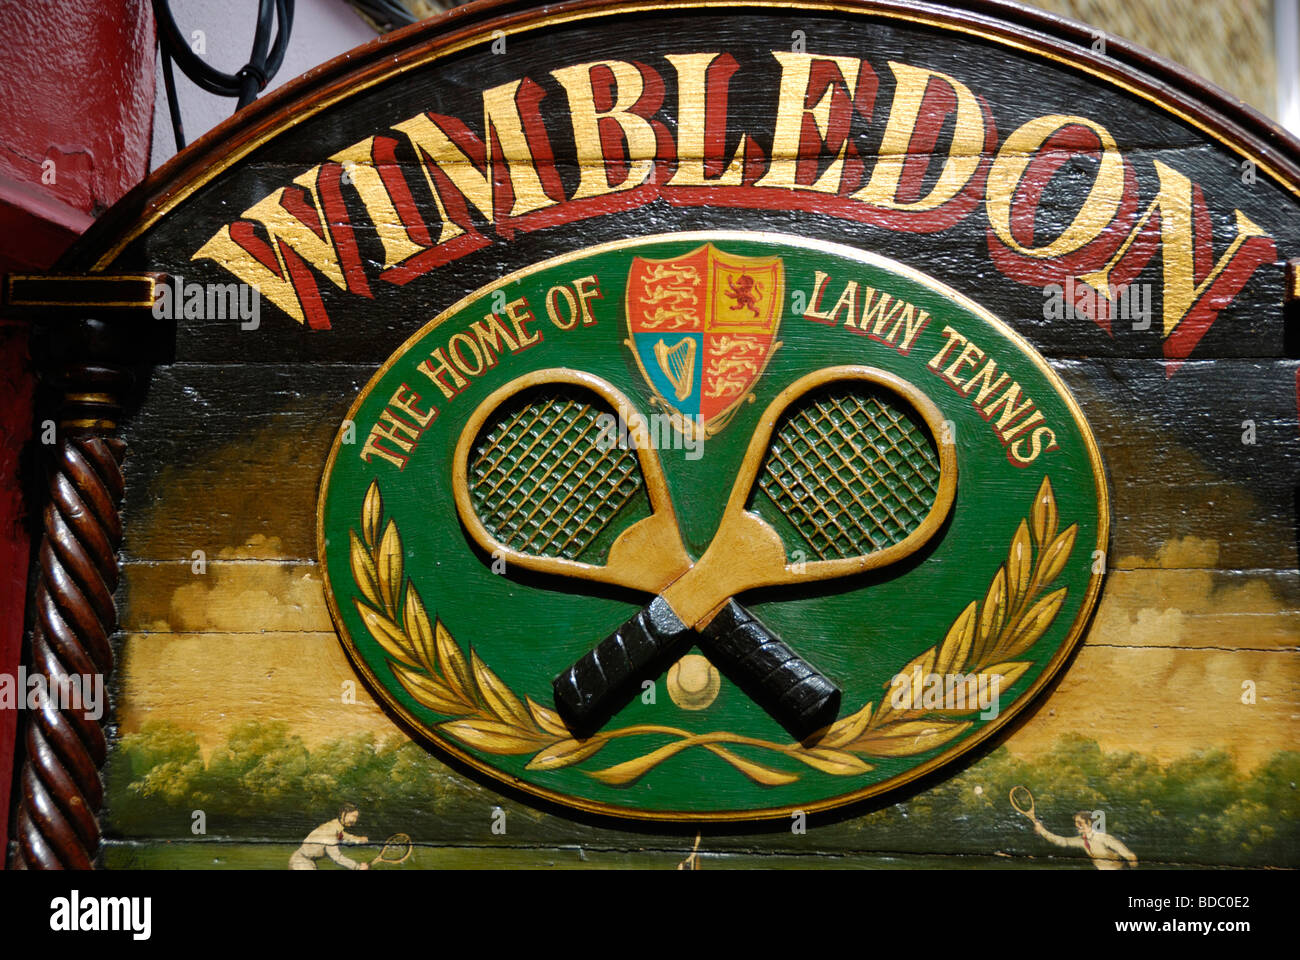 Ancienne enseigne publicitaire en bois peint à la main la promotion du Wimbledon Lawn Tennis Club Banque D'Images